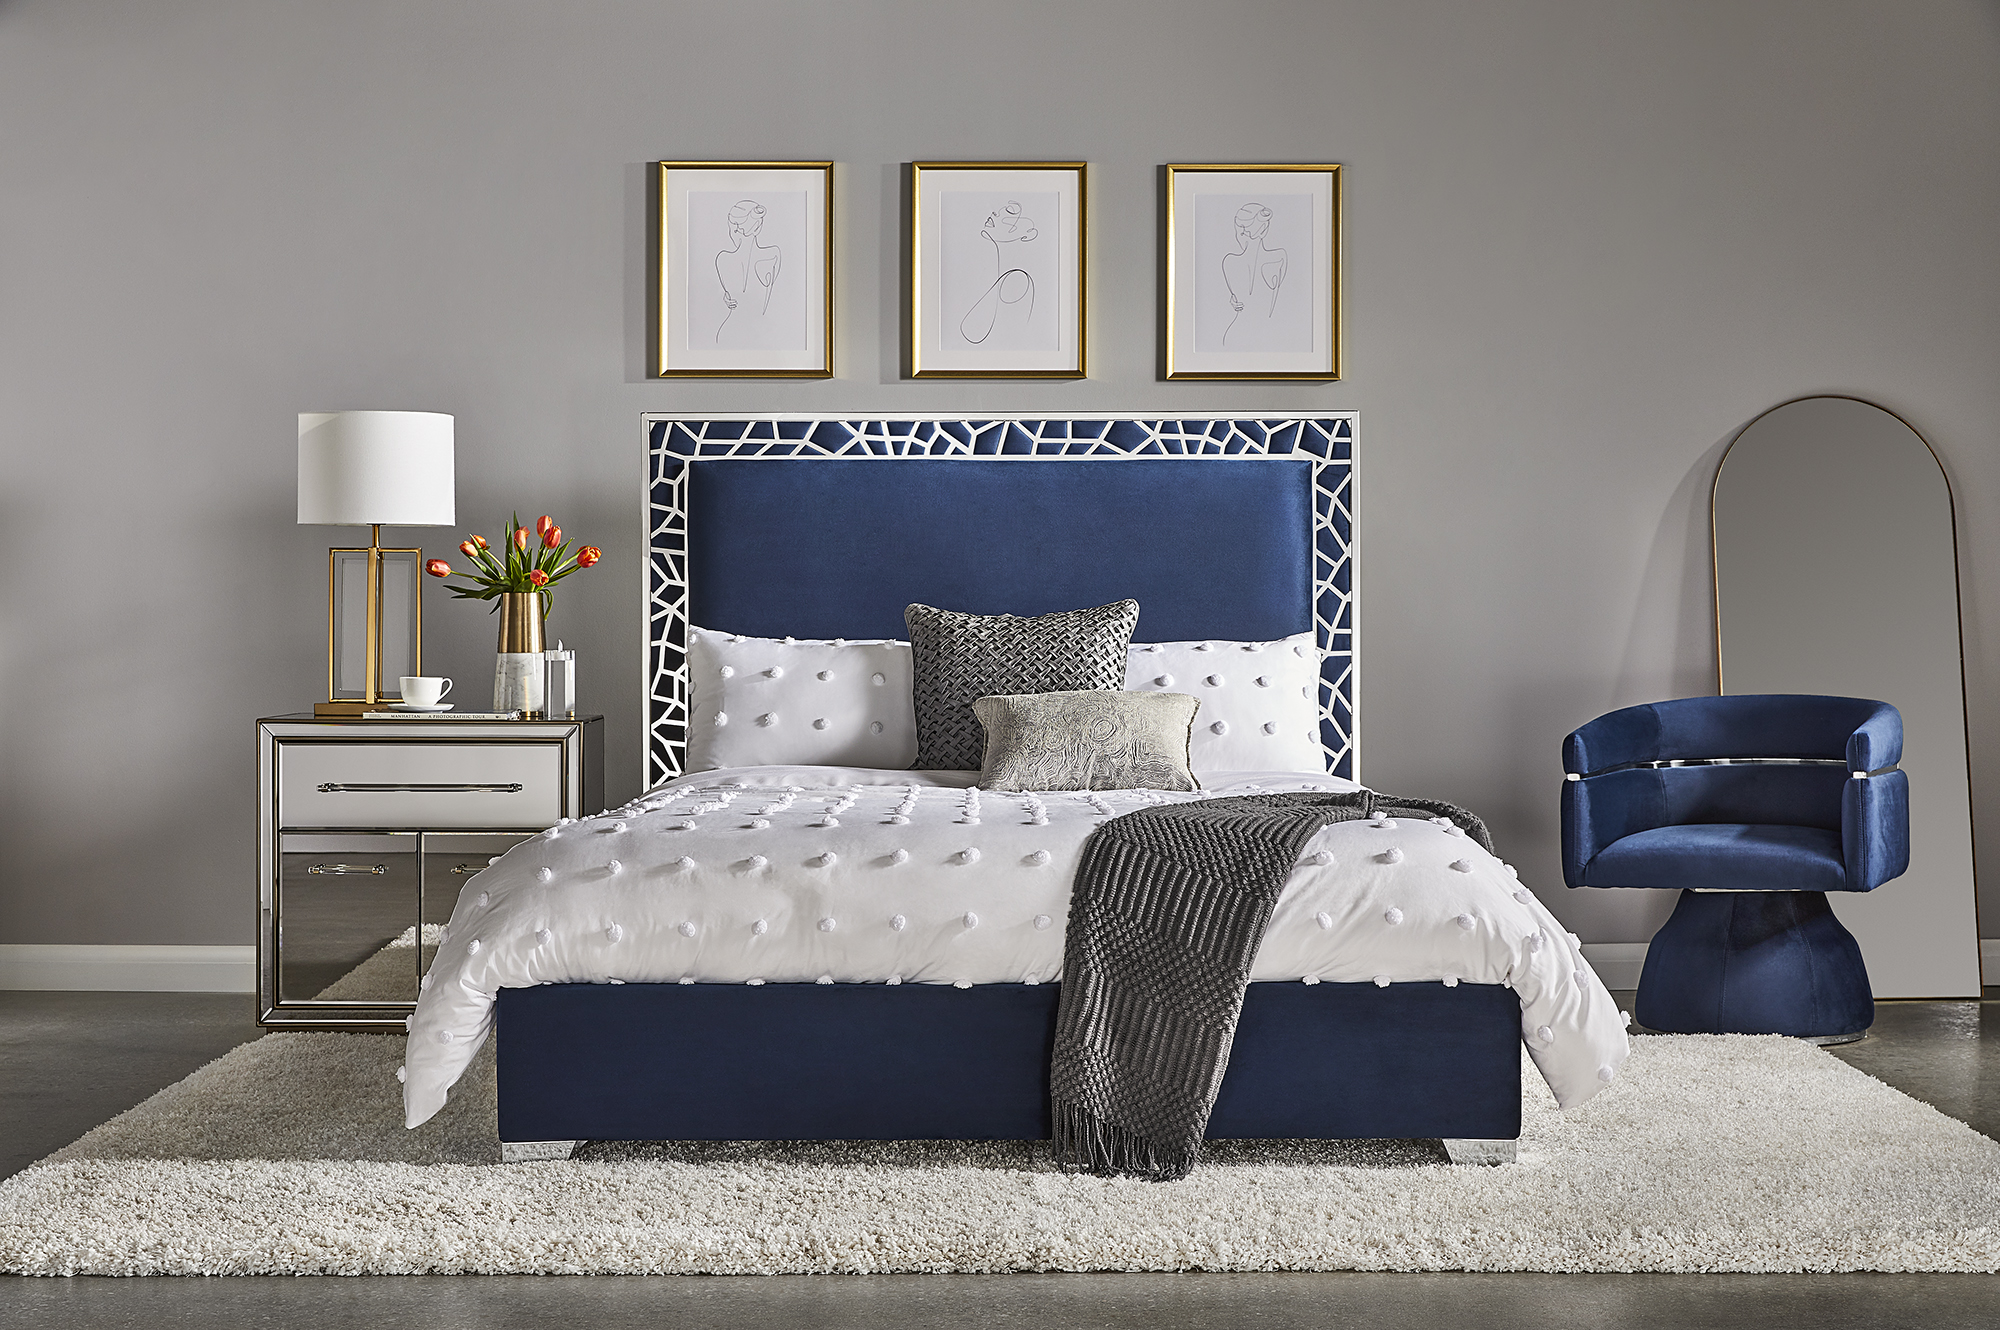 Wellington Bed: Blue Velvet